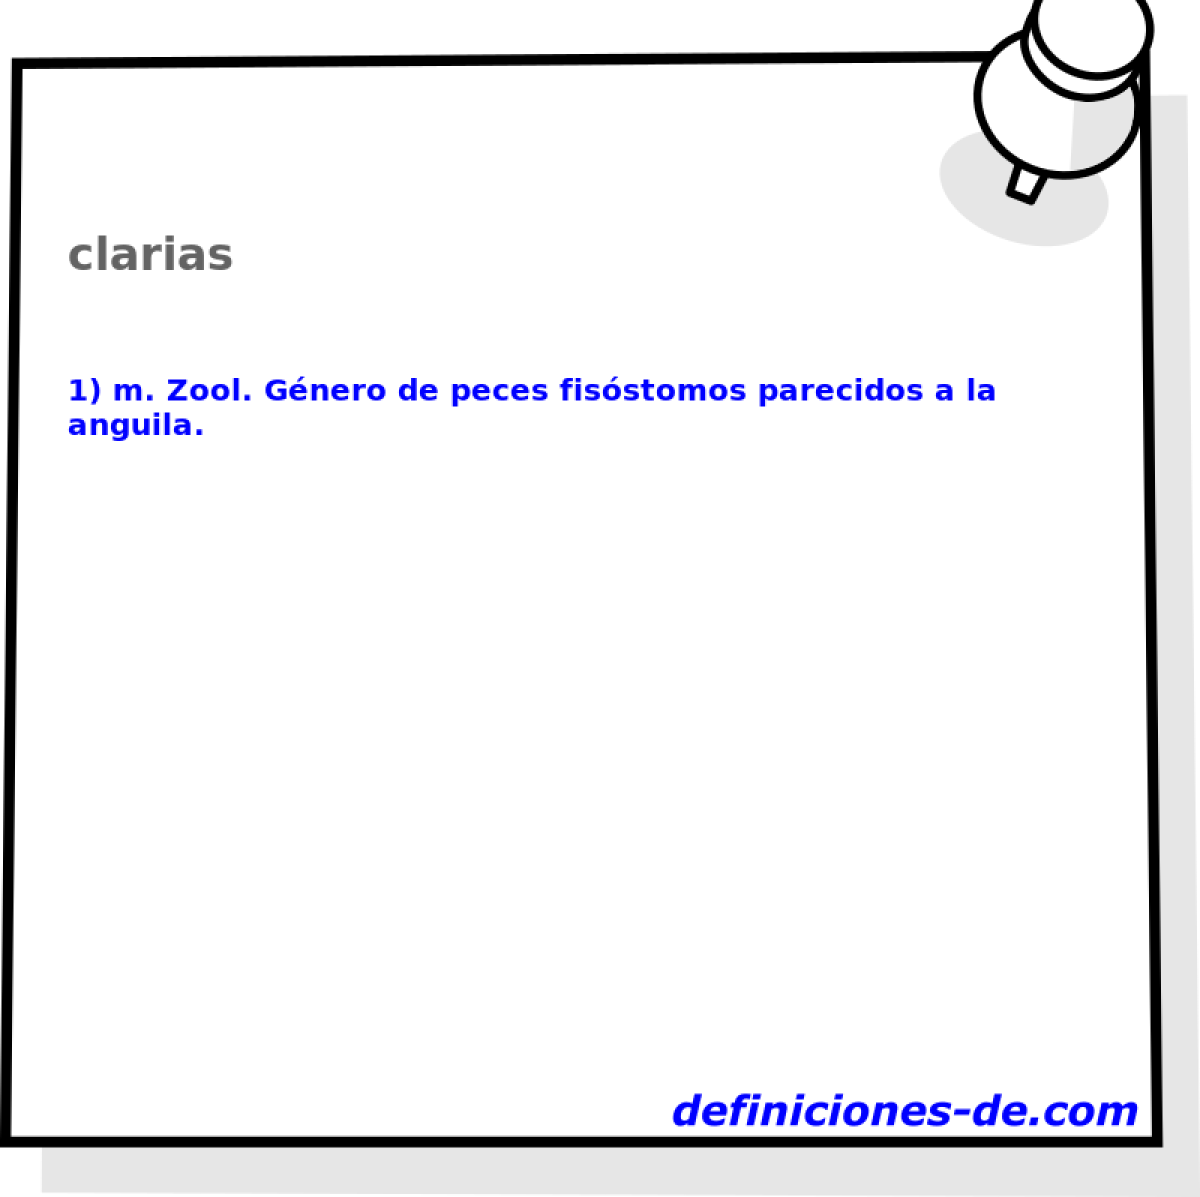 clarias 